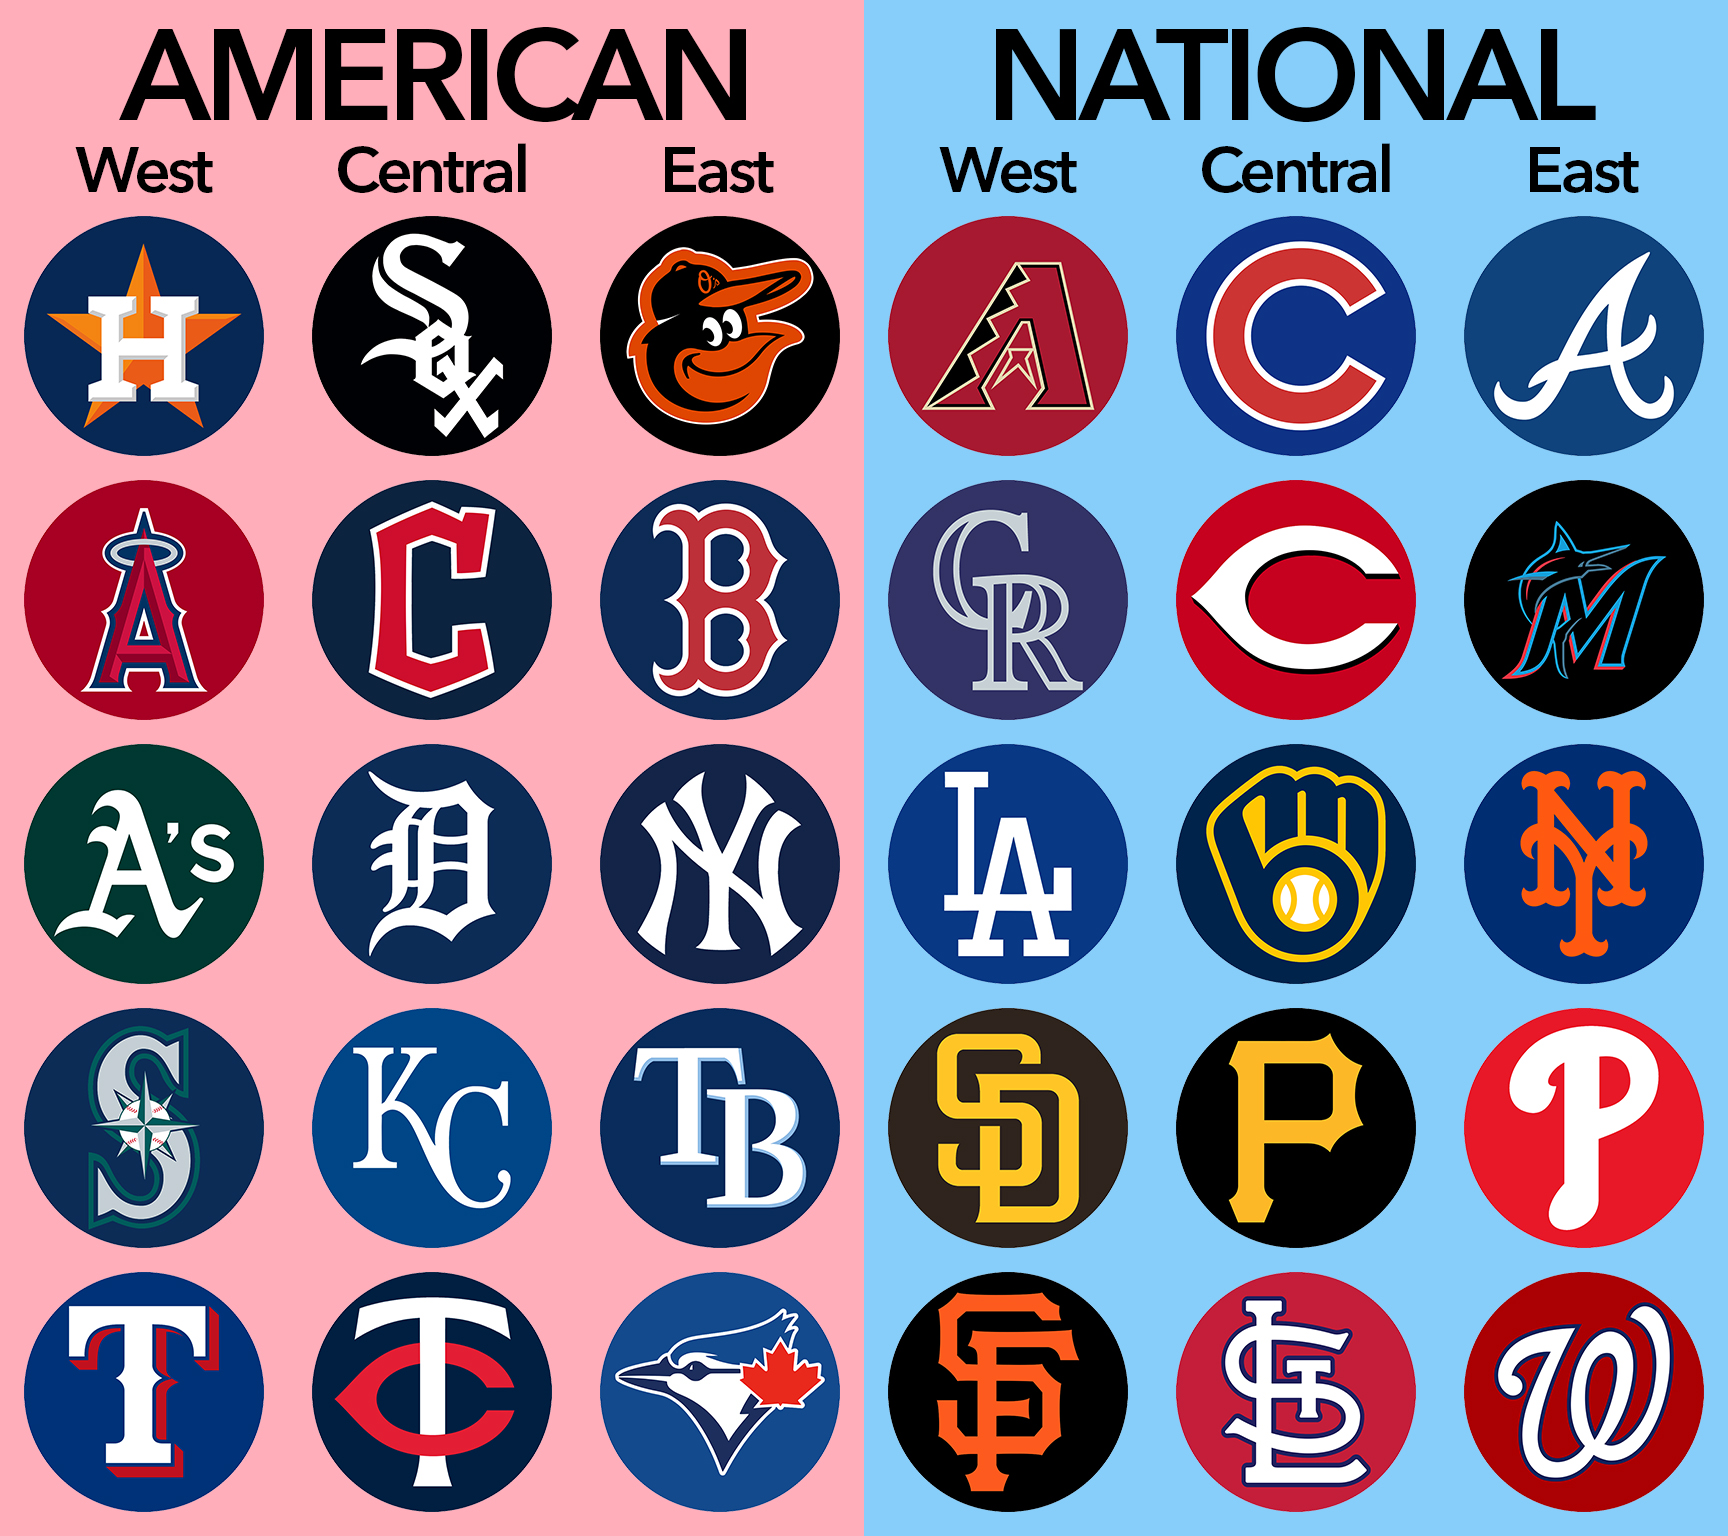 My top 5 MLB teams before the season